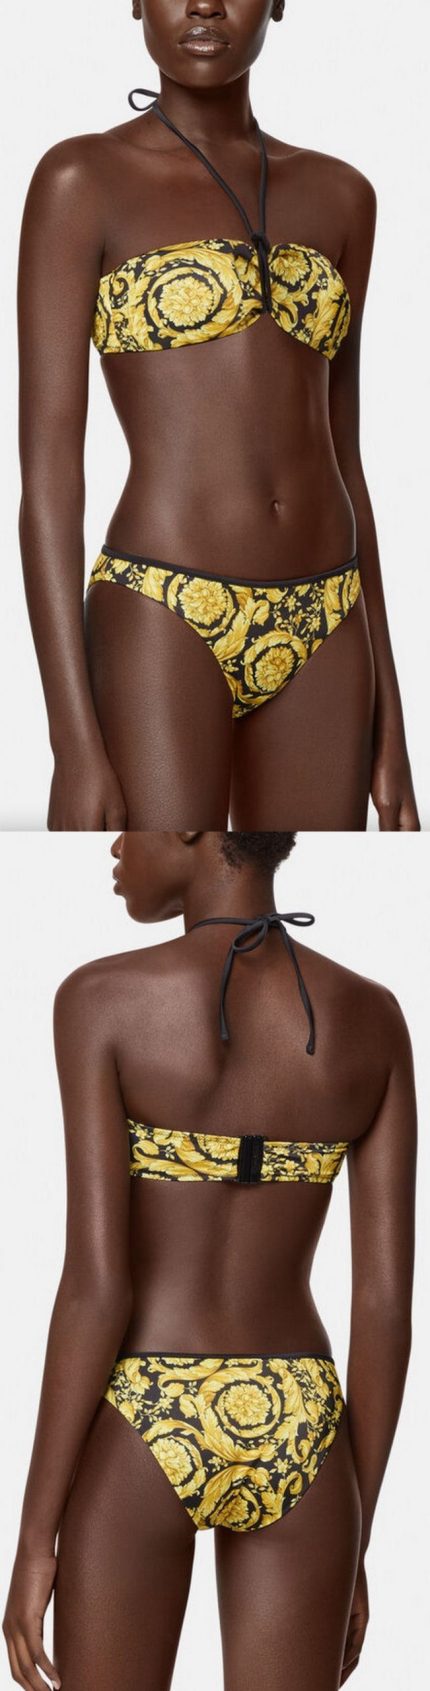 Barocco Print Bikini Inspired Fashions Boutique